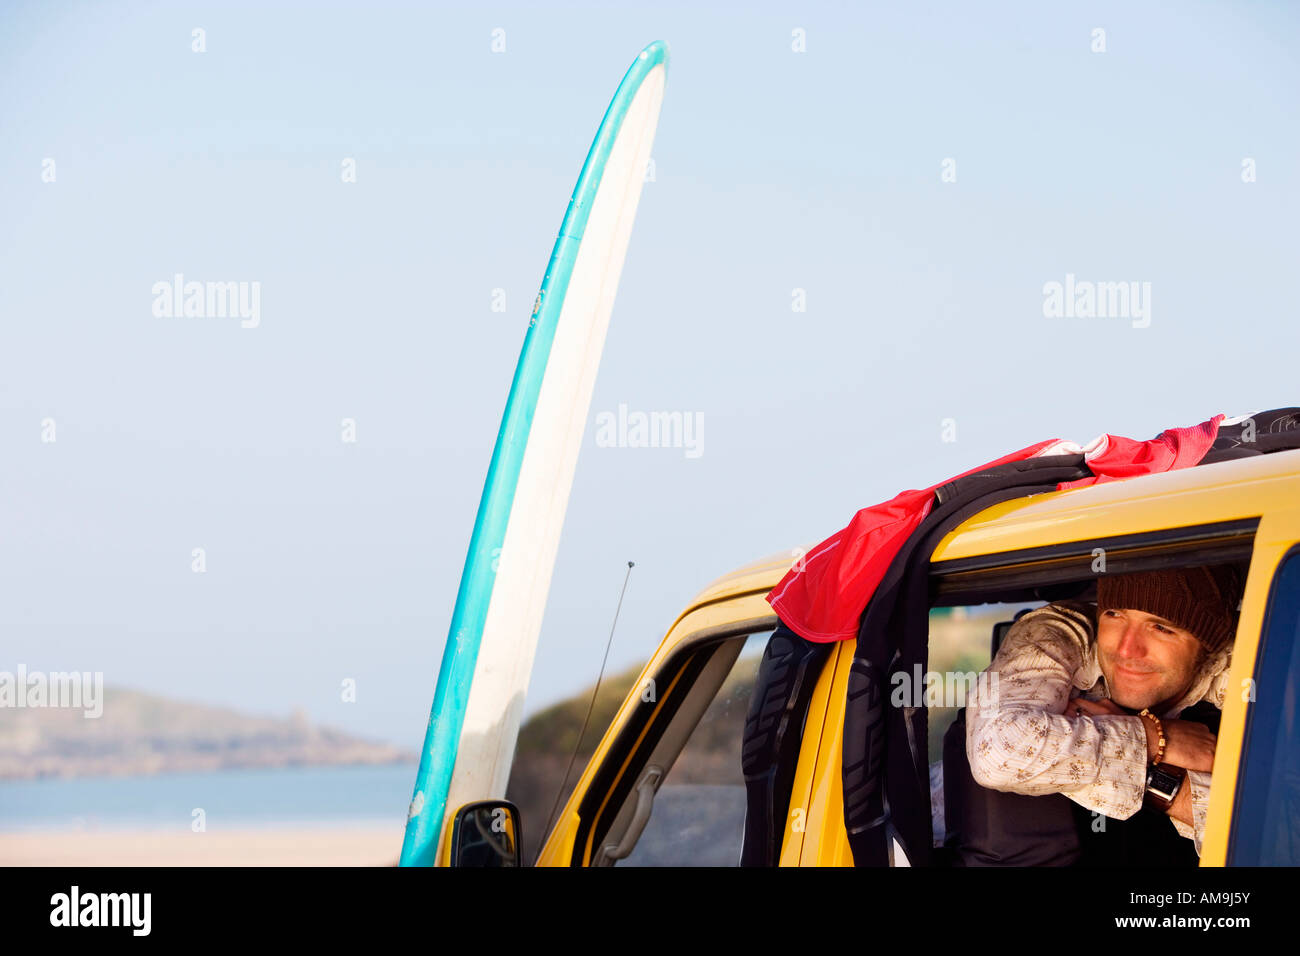 Mann in van lächelnd mit Surfbrett an der Motorhaube gelehnt. Stockfoto